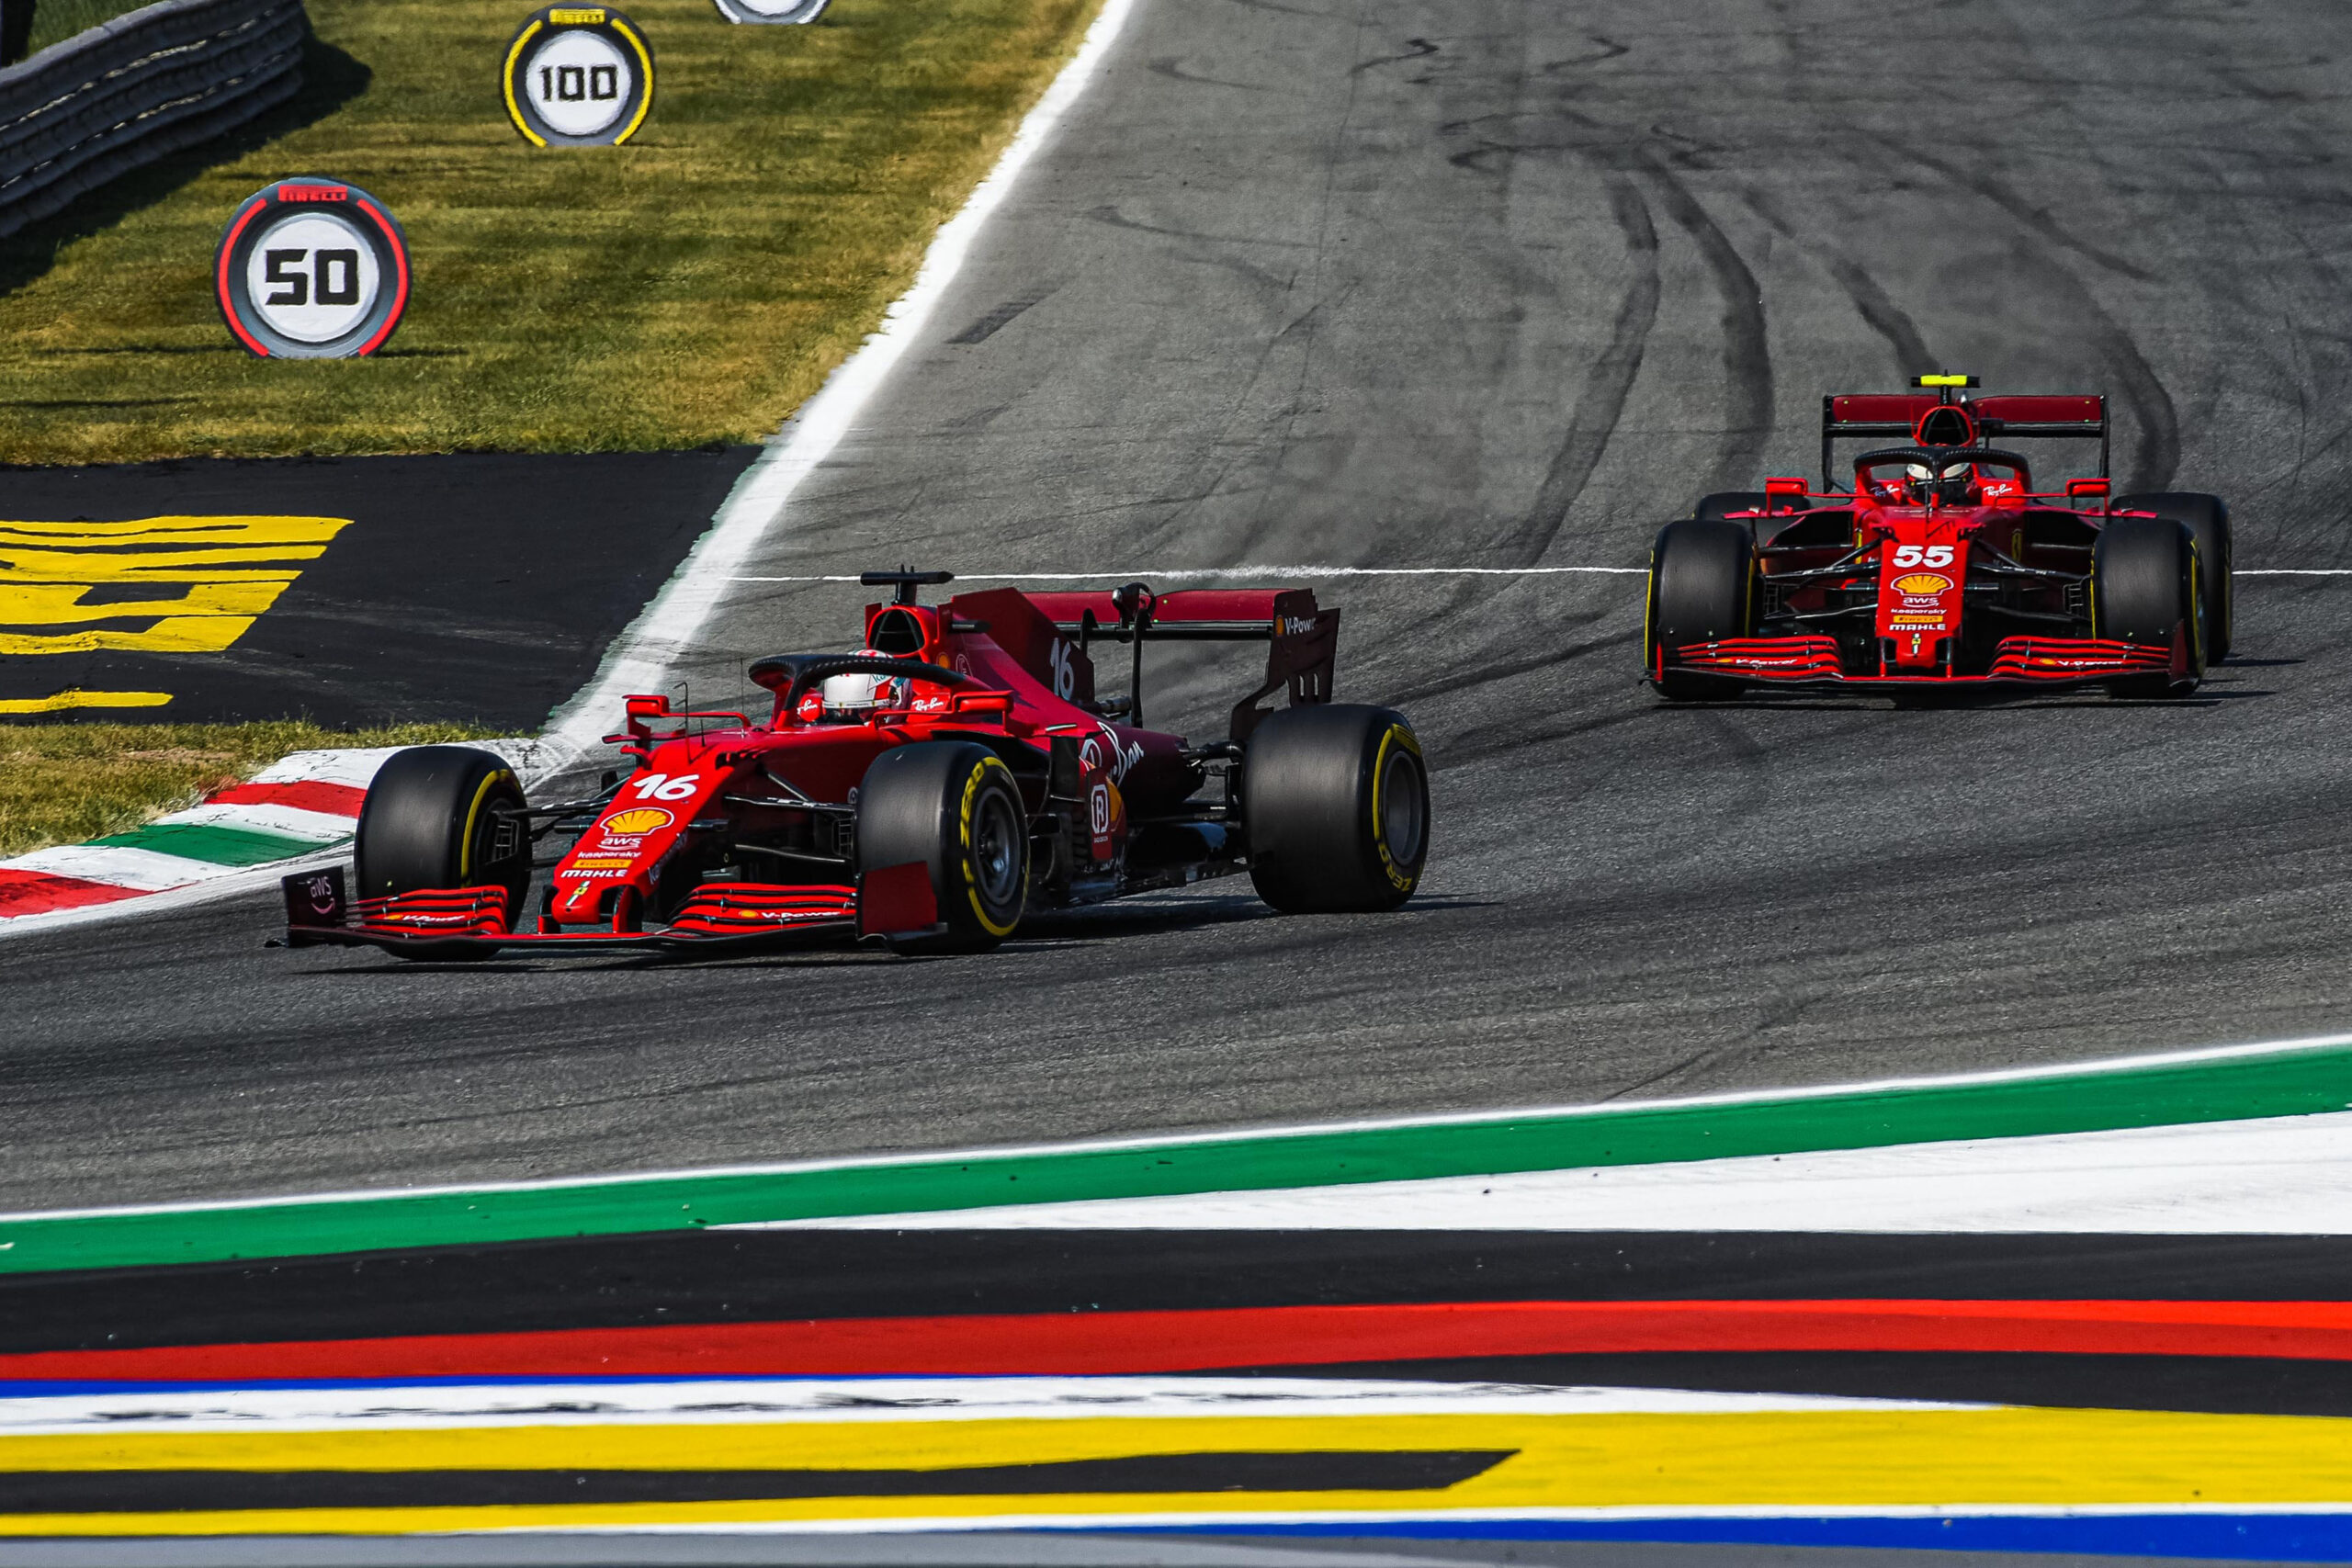 Ferrari drivers finish P4 & P6